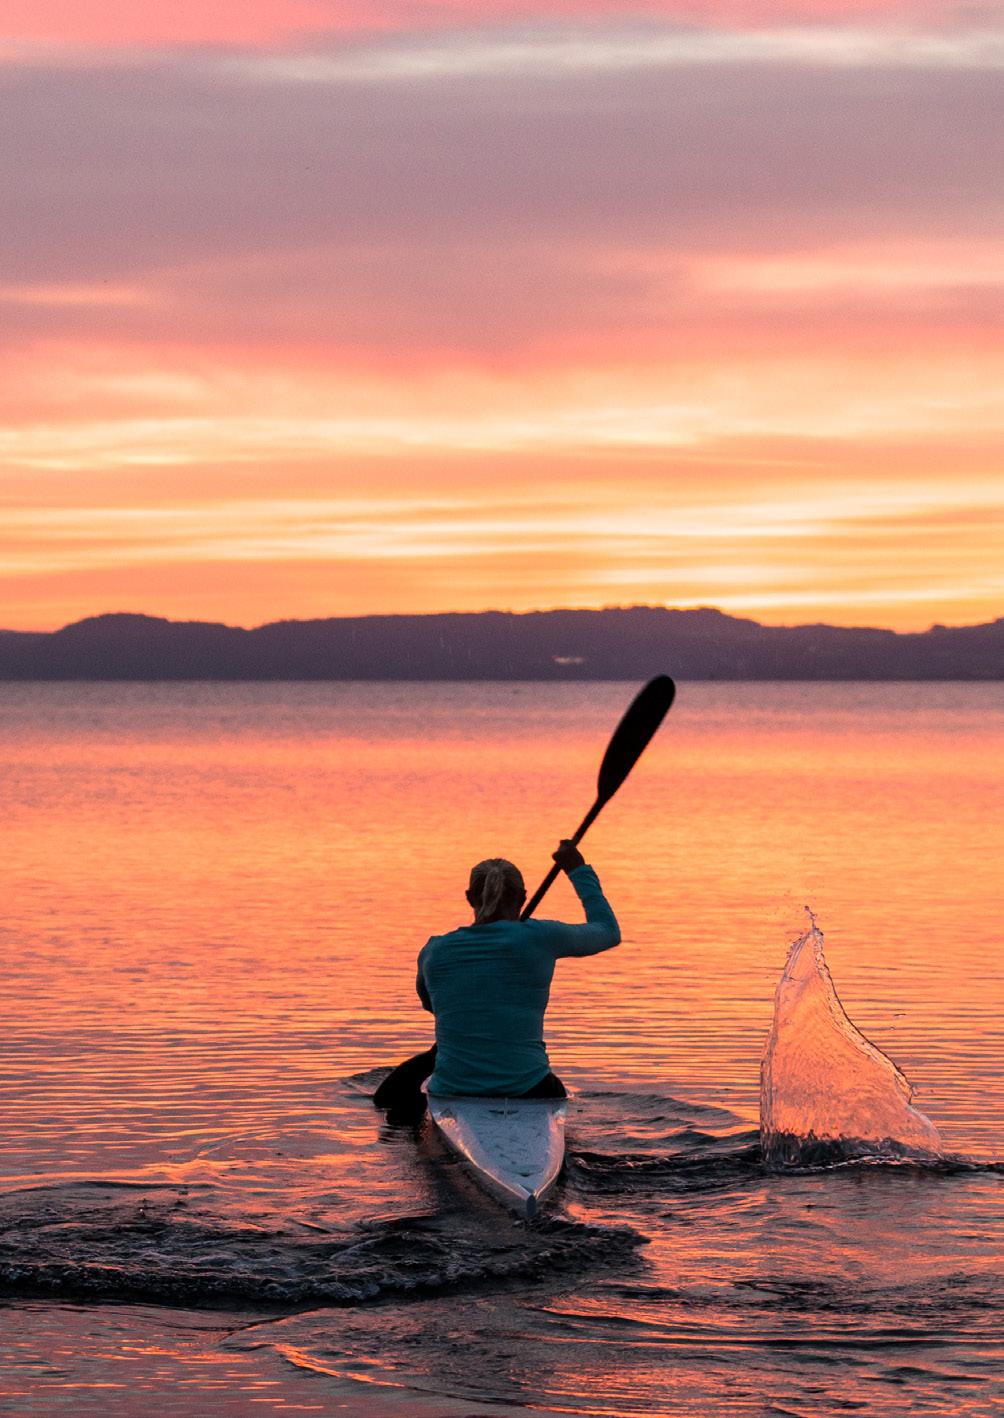 Att se på landskapet på ett nytt sätt skapar frid, lugn och fina upplevelser. Motivering till varför kajak & kanot är den aktivitet hon helst skulle vilja uppleva. Norsk kvinna 47 år.